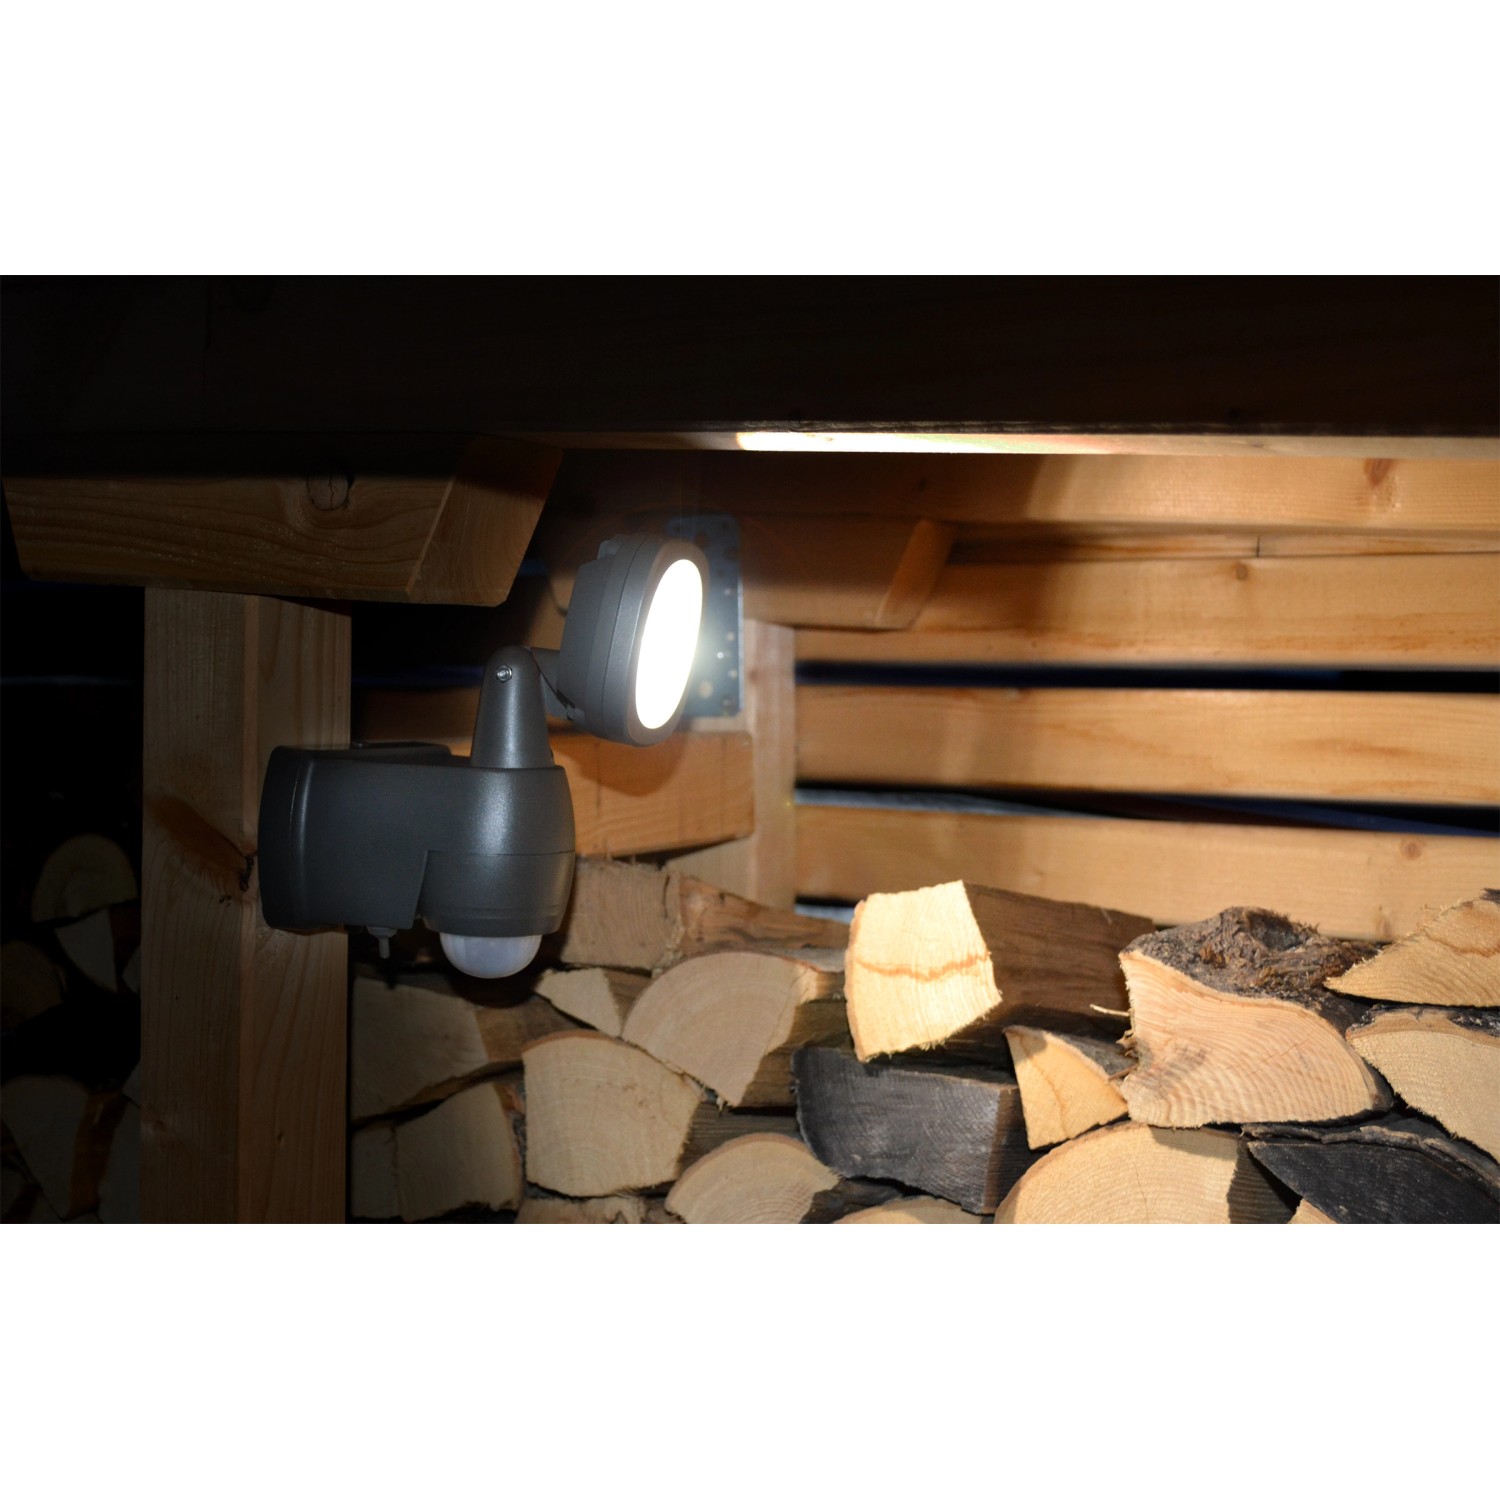 Brennenstuhl LED Strahler Lufos kabellos mit Batterie Grau kaufen bei OBI